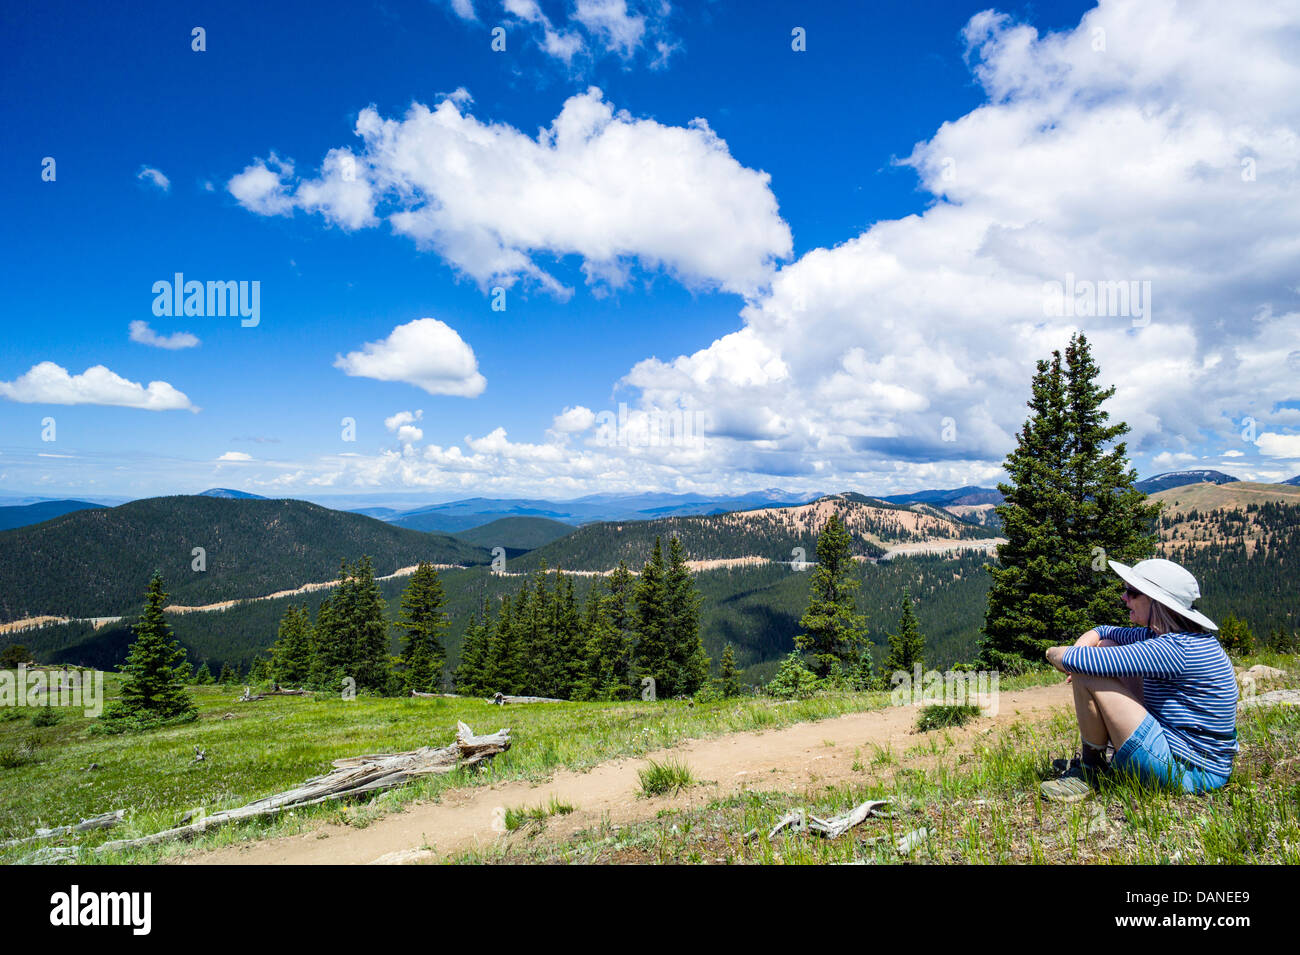 Lone donna messa in pausa per godere la vista, Monarch Crest Trail, Central Colorado, STATI UNITI D'AMERICA Foto Stock